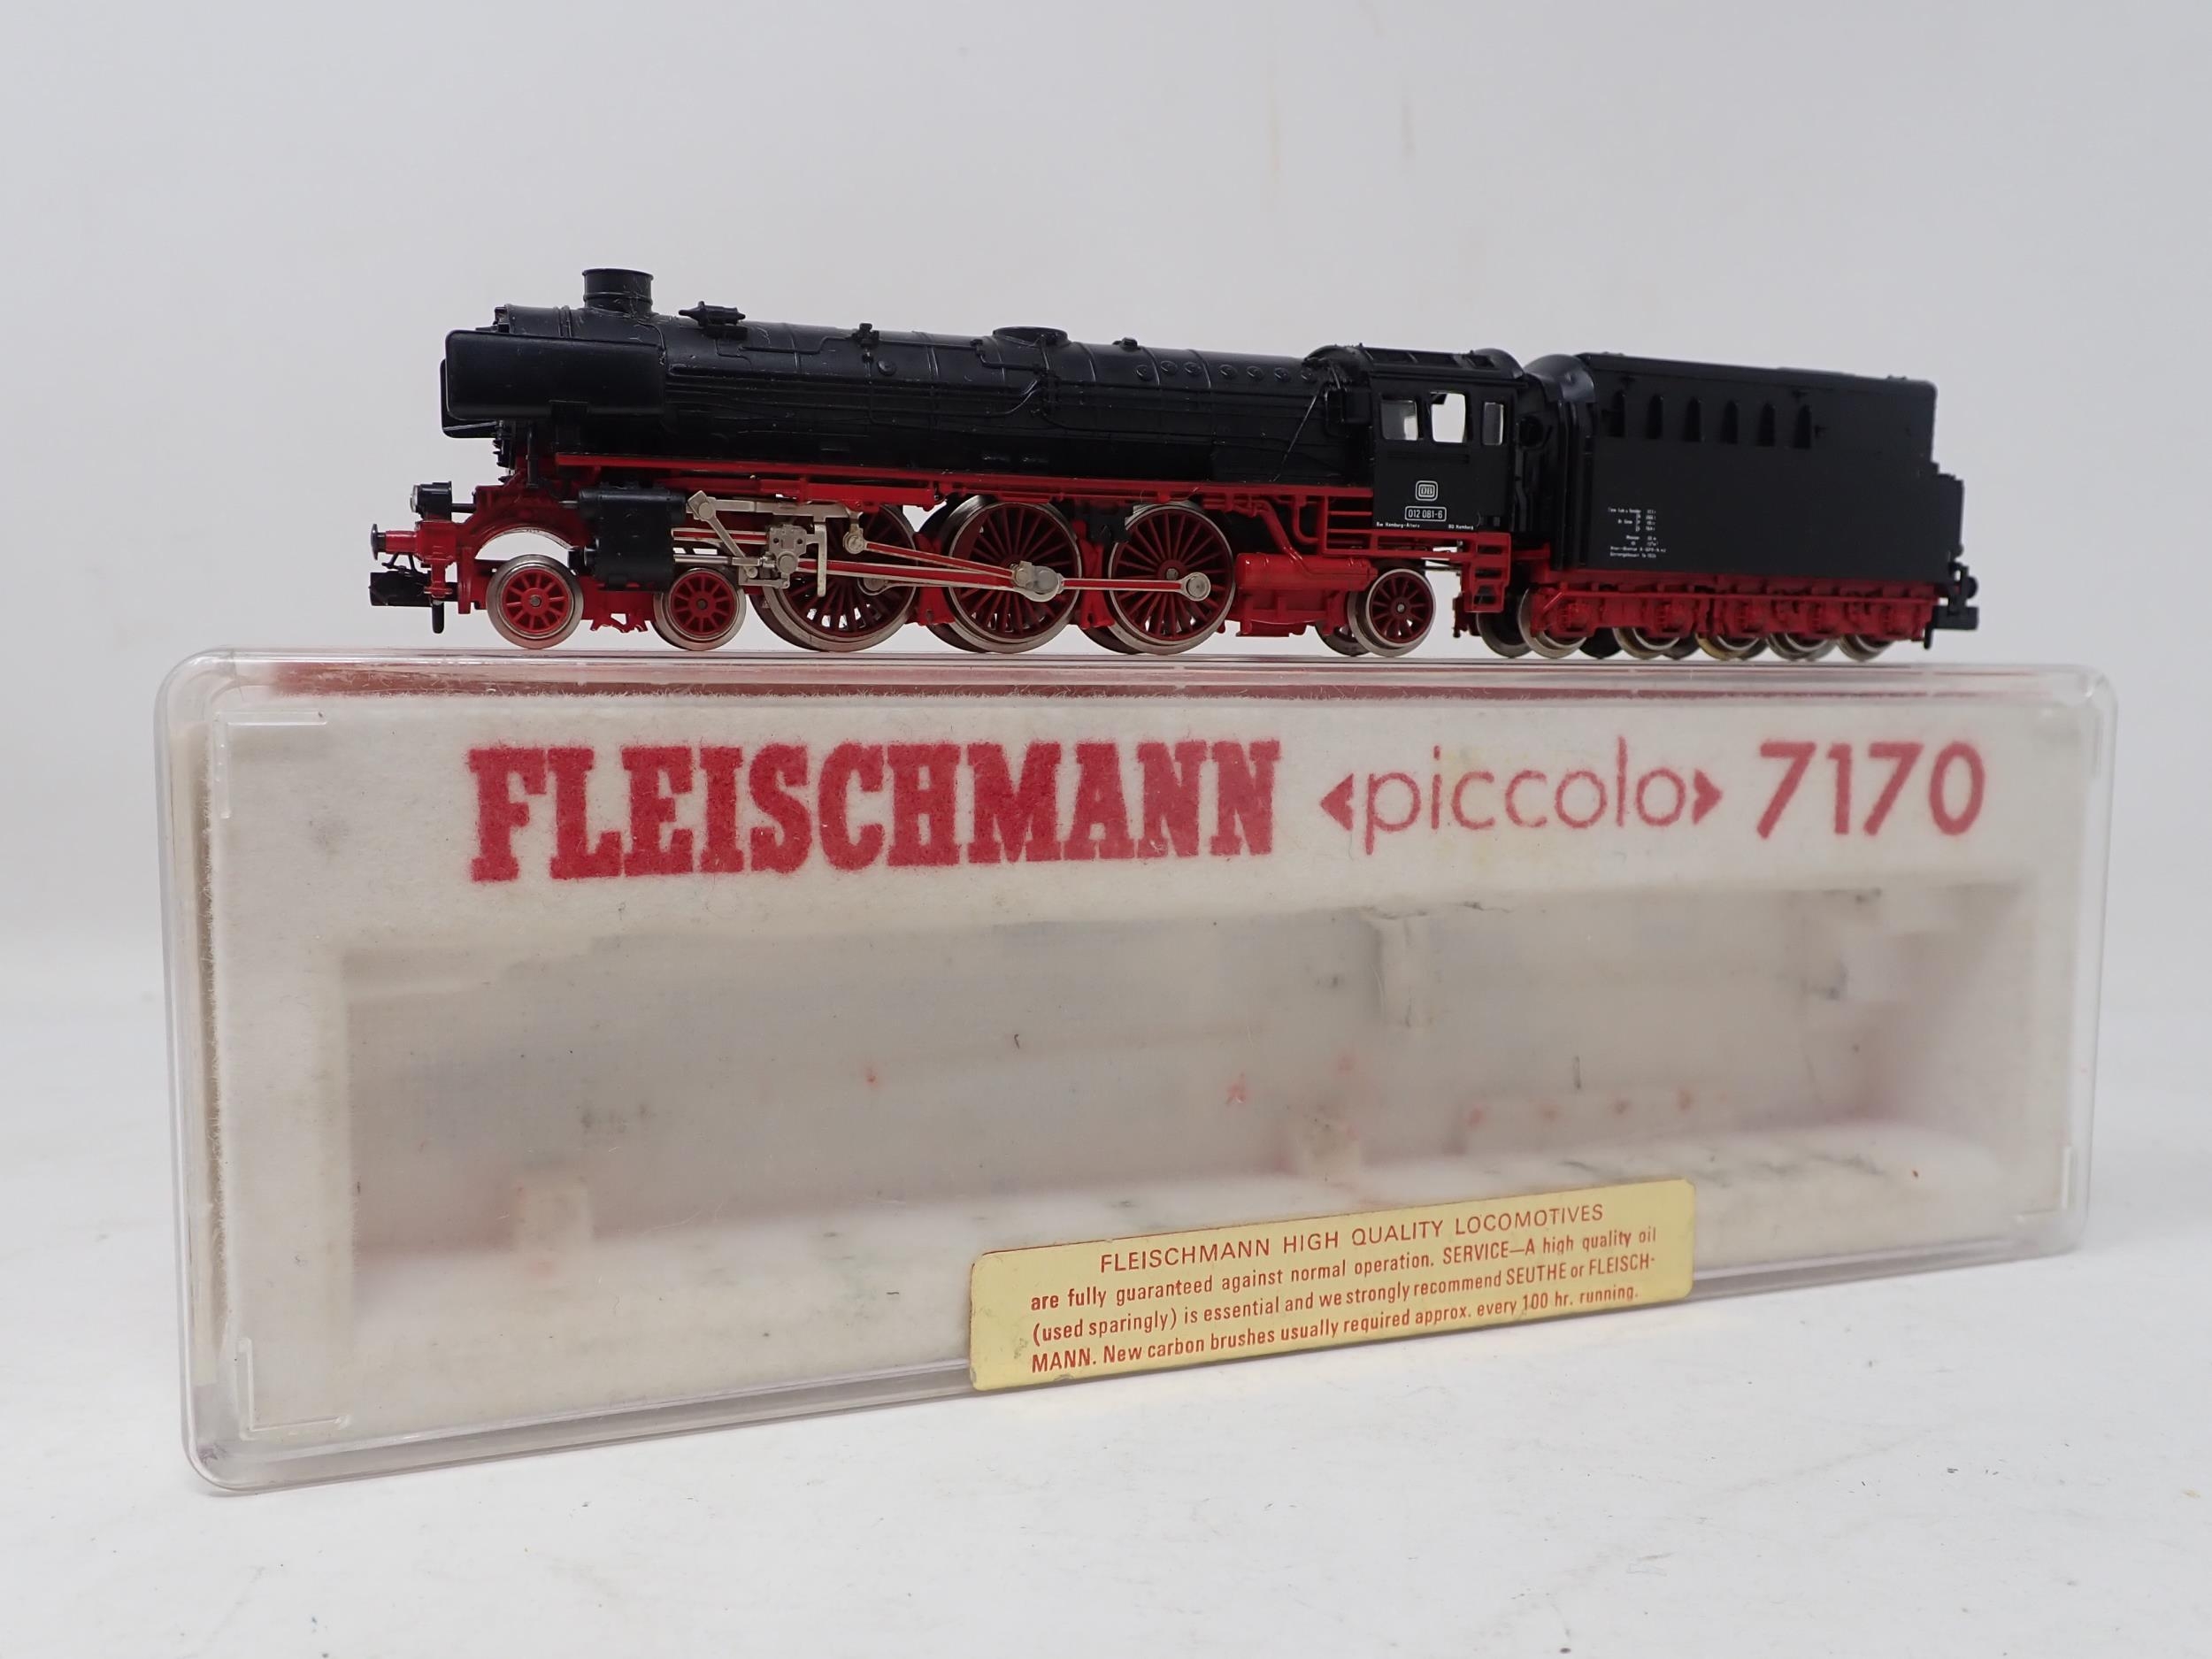 Fleischmann 'Piccolo' 7170 4-6-2 Locomotive, boxed